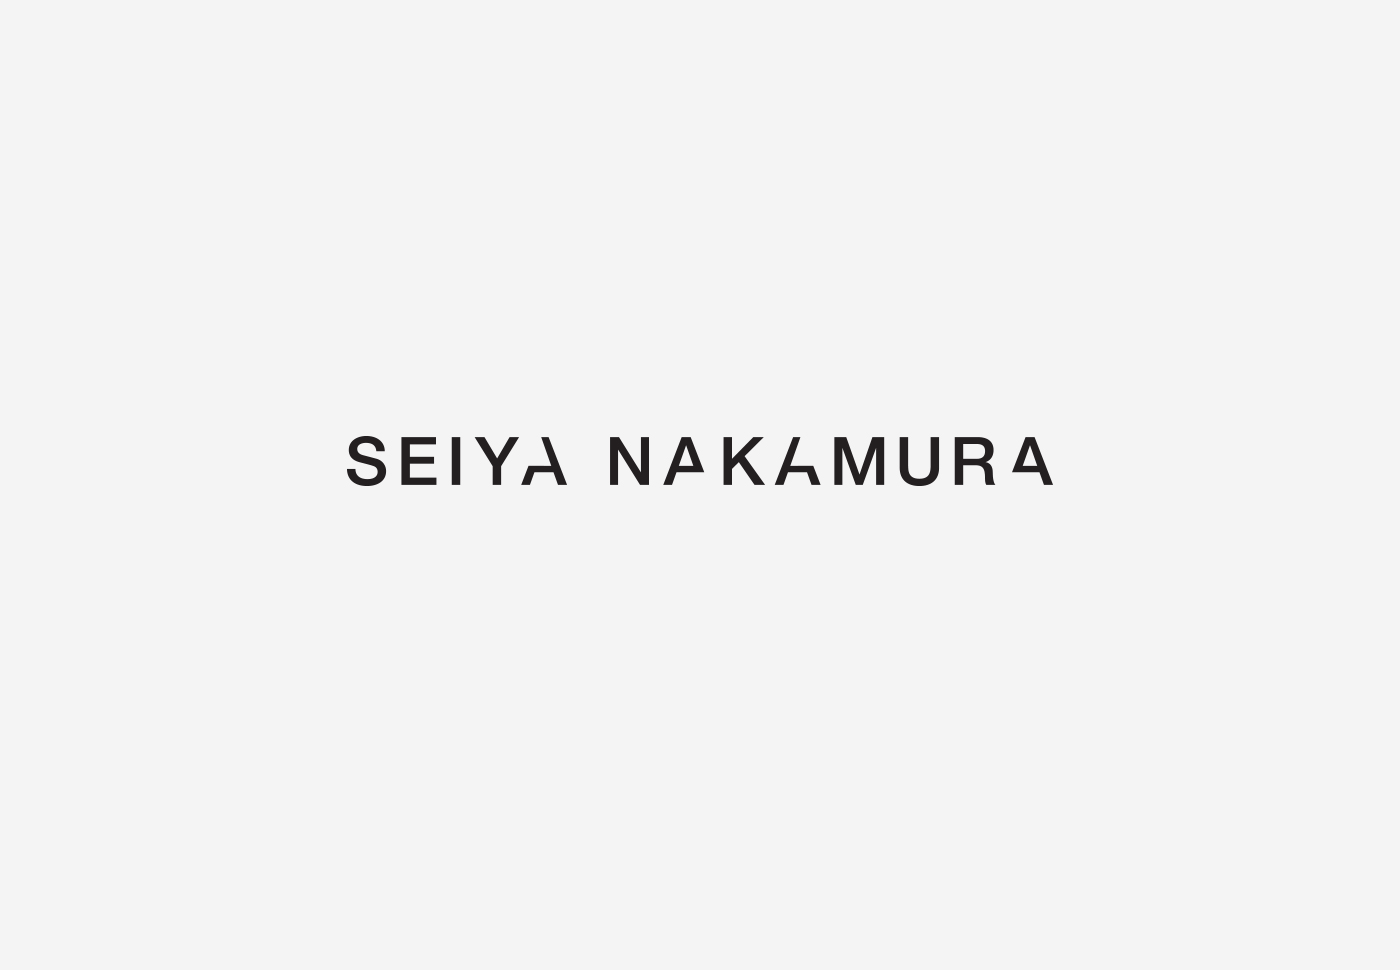 Seiya Nakamura – Logo